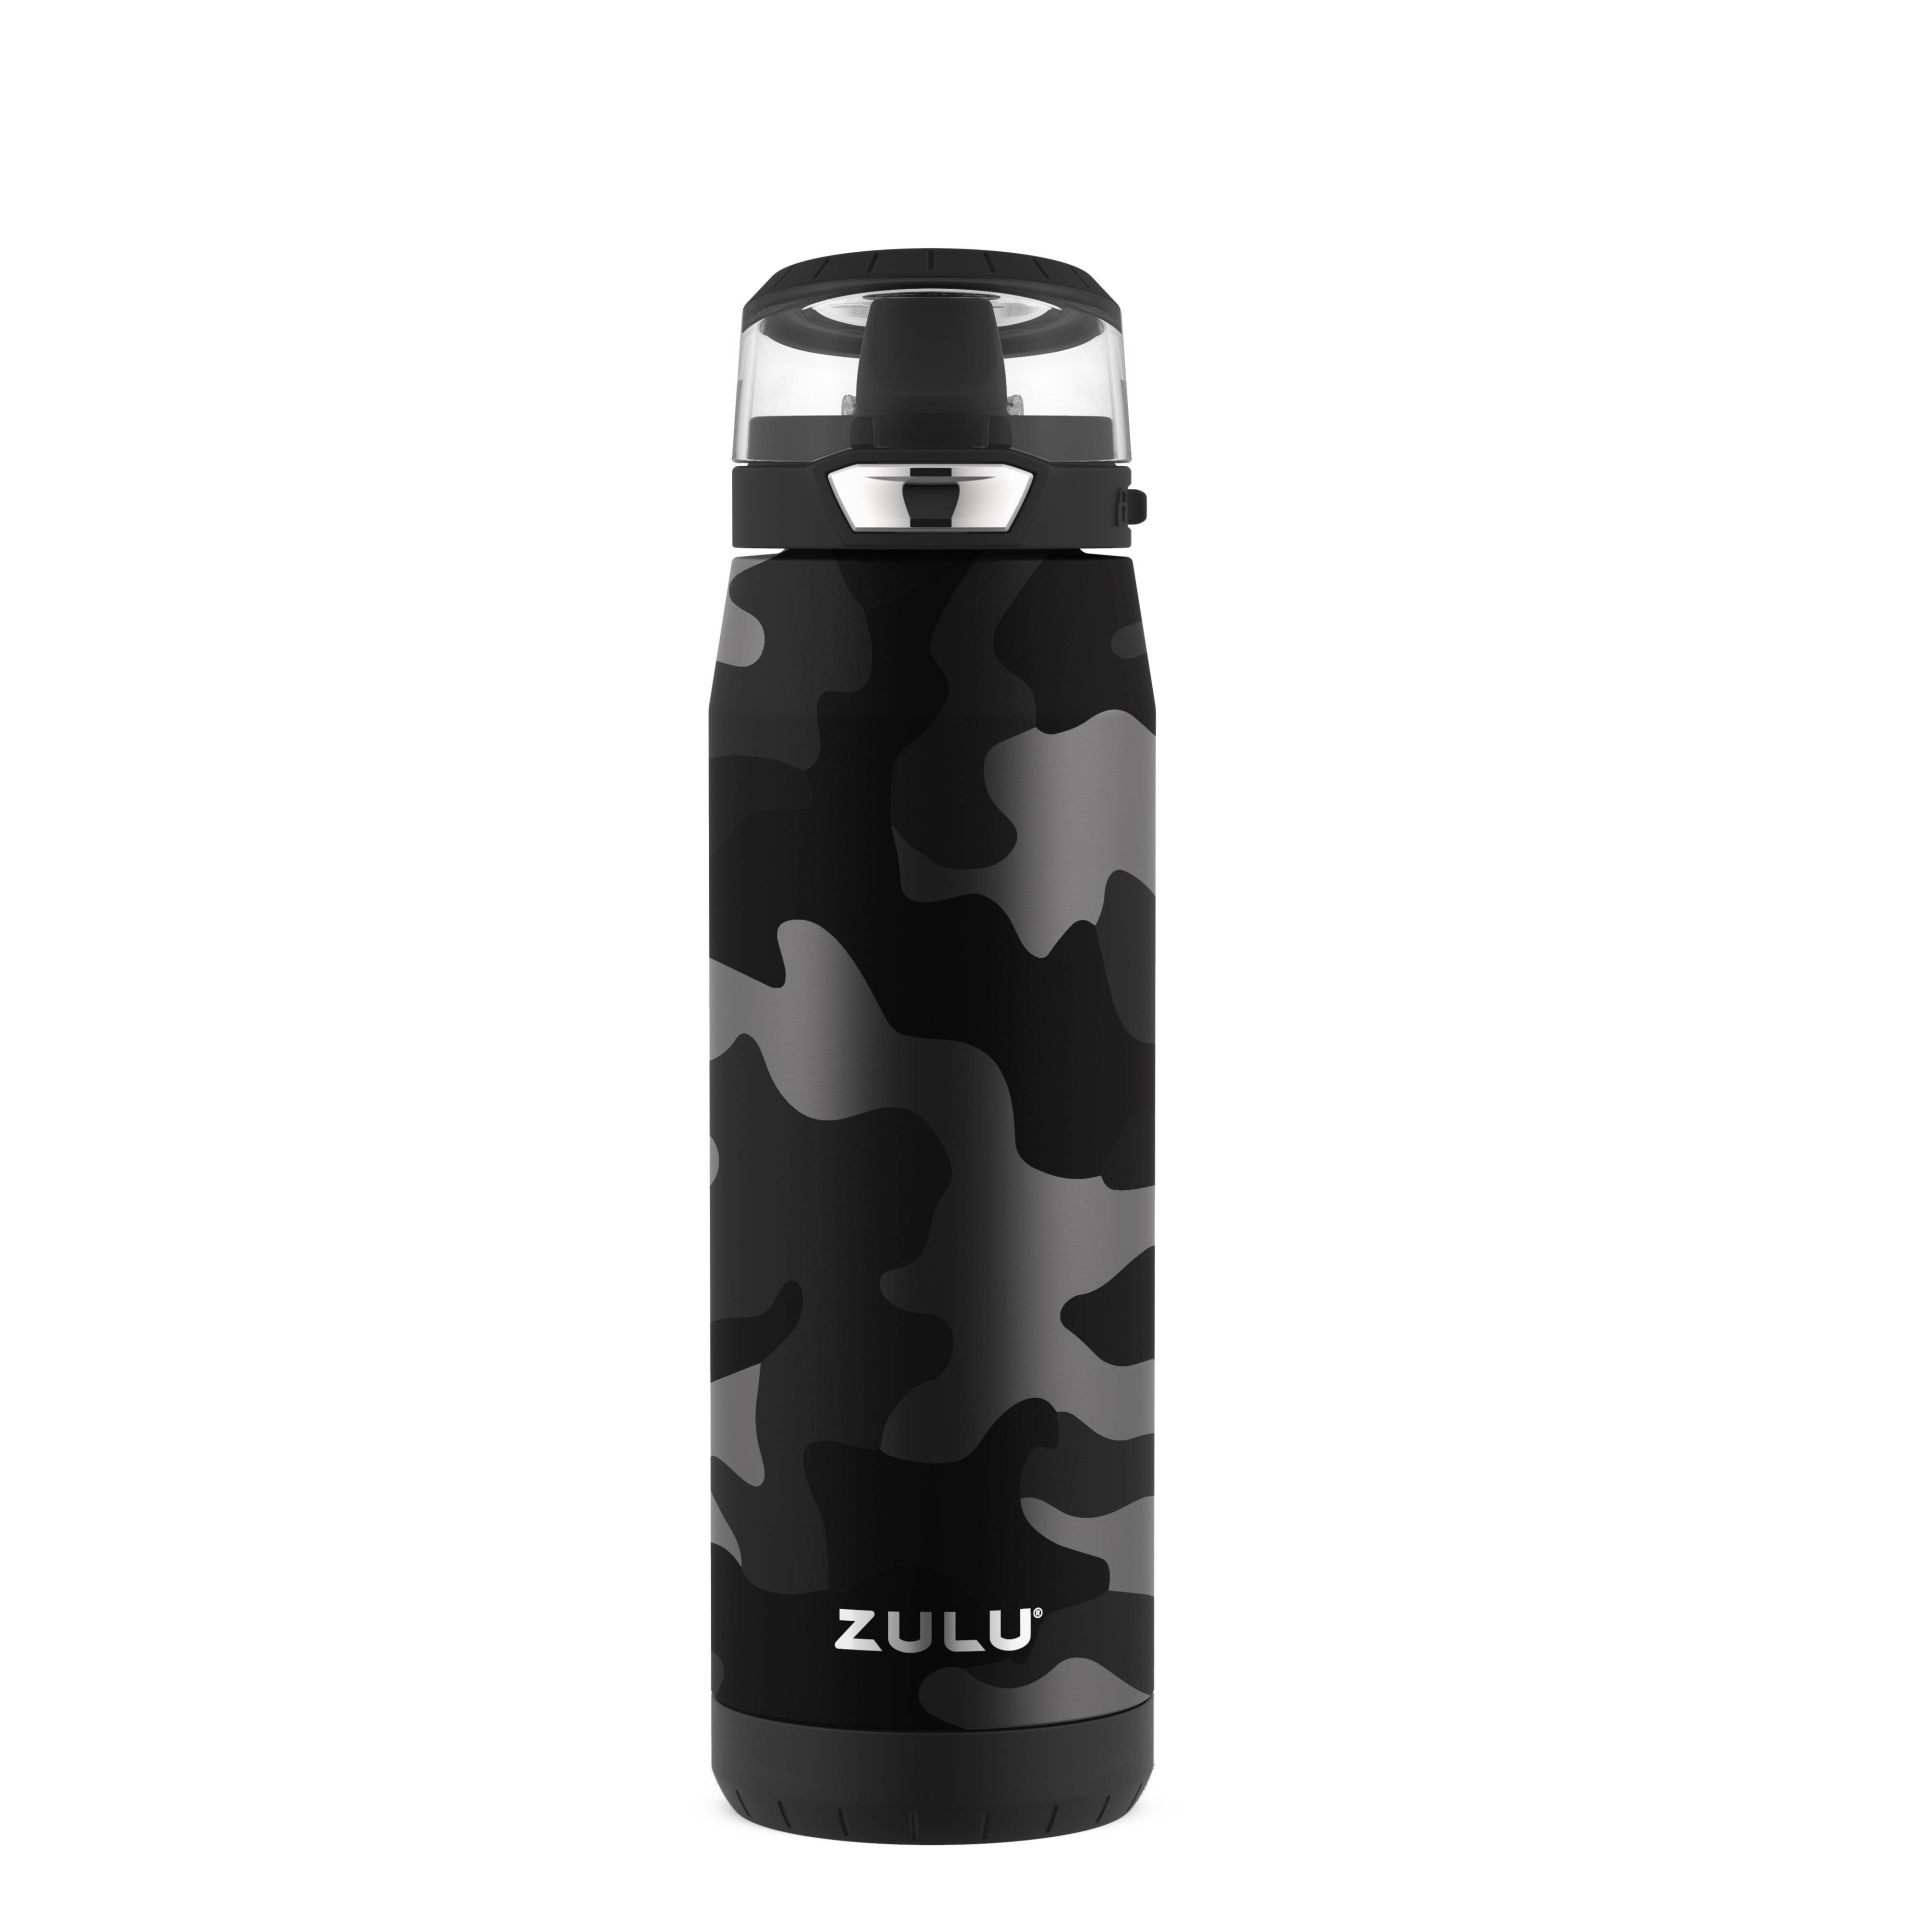 Zulu Swift Stainless Steel Water Bottle - Camo Black 20 oz | Shipt Zulu Stainless Steel Water Bottle